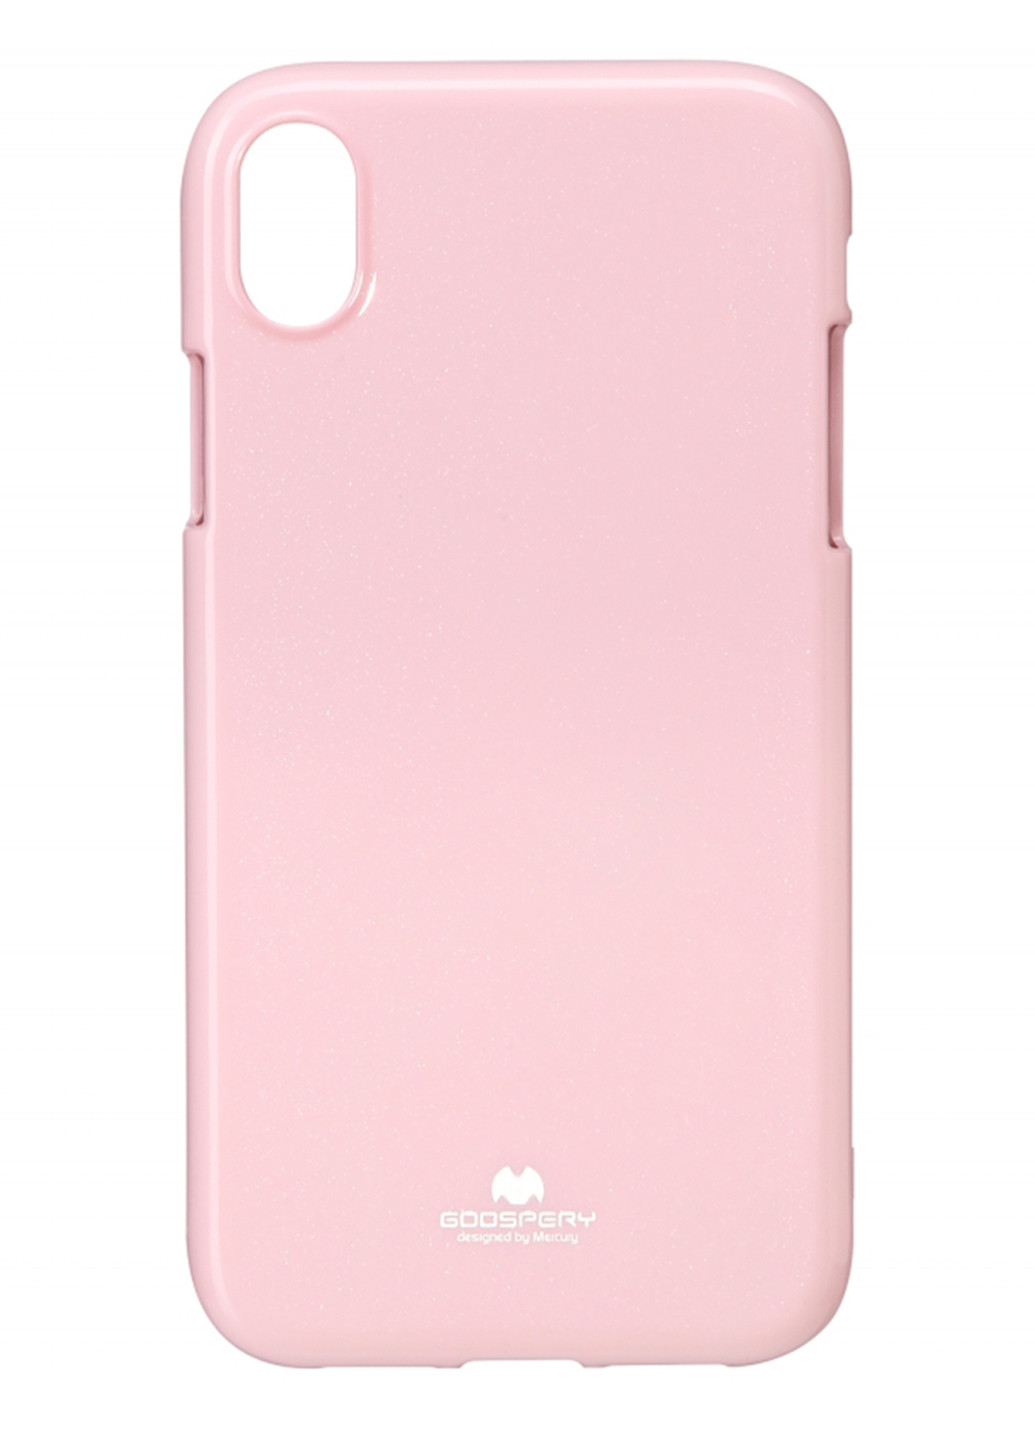 Чехол Goospery для Apple iPhone XR. Jelly Case. PINK розовый